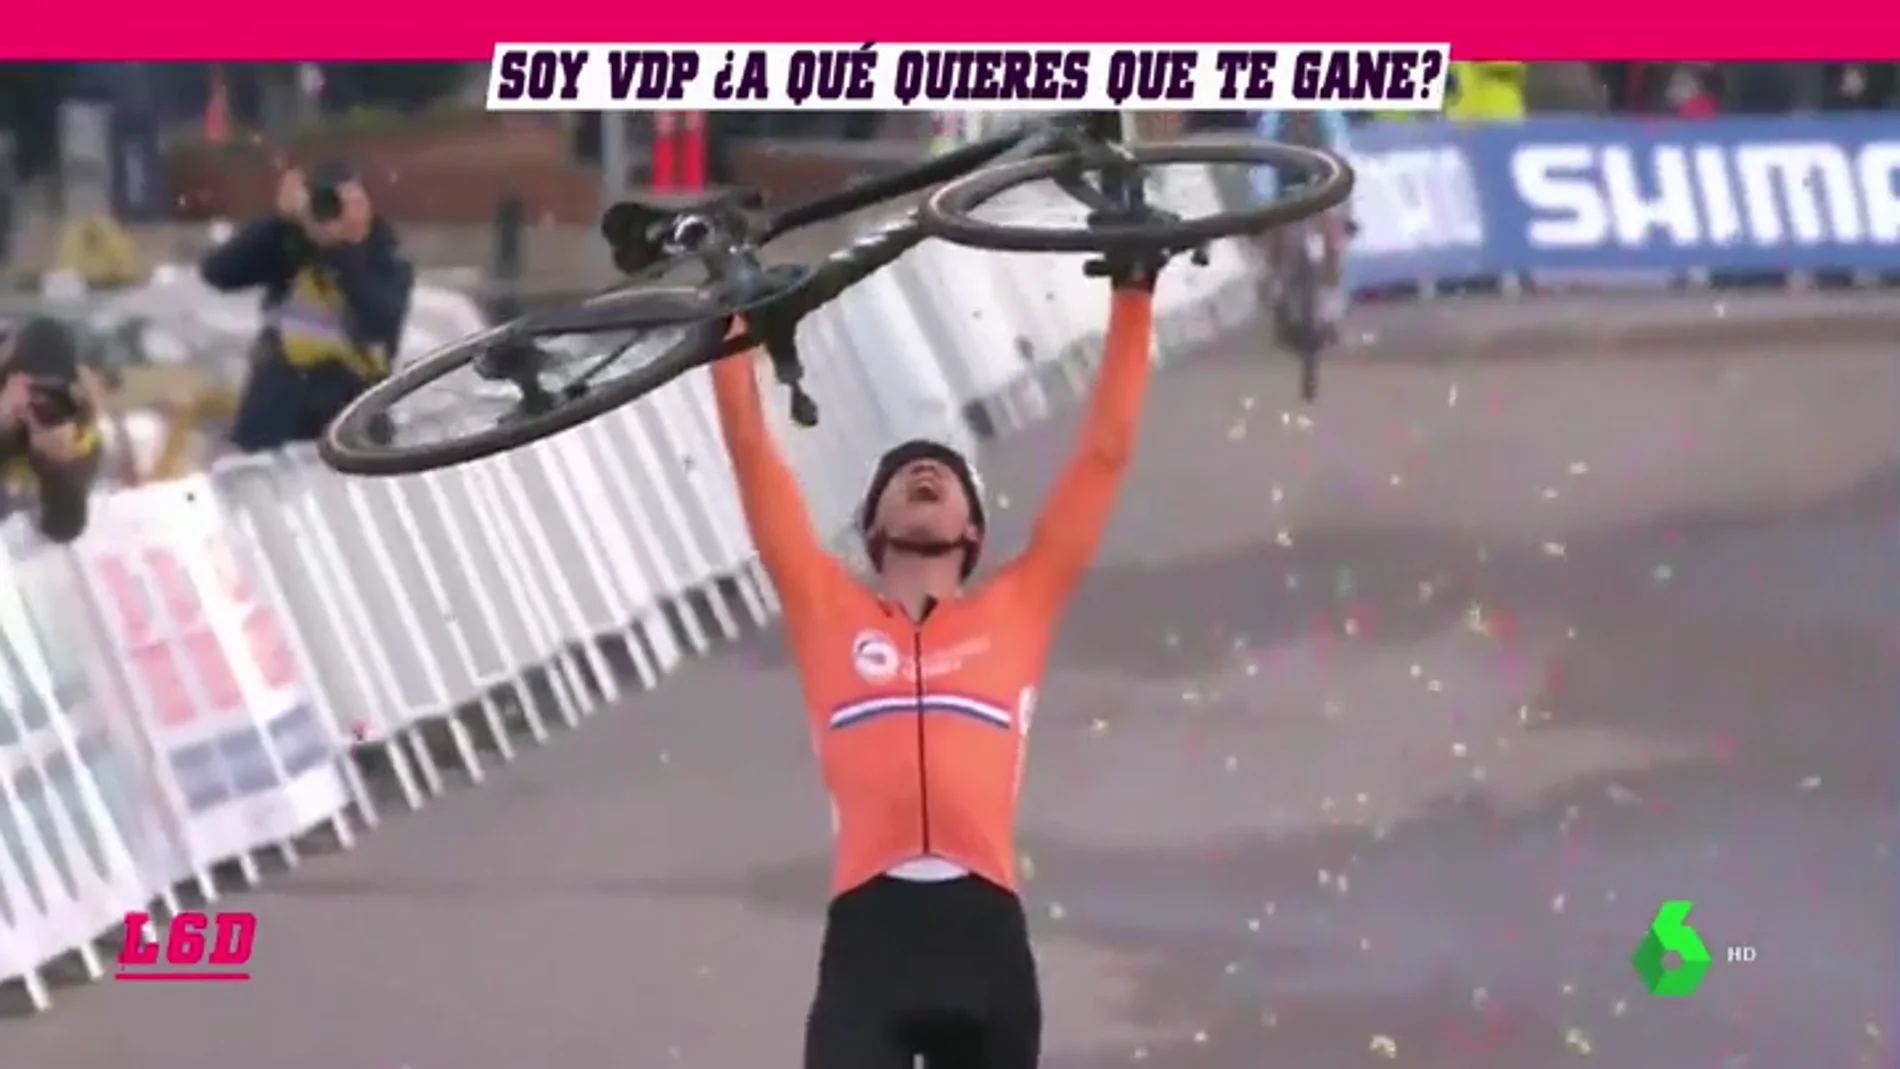 Van der Poel, el superhombre sobre una bicicleta: un ganador en montaña, en ruta y en ciclocross